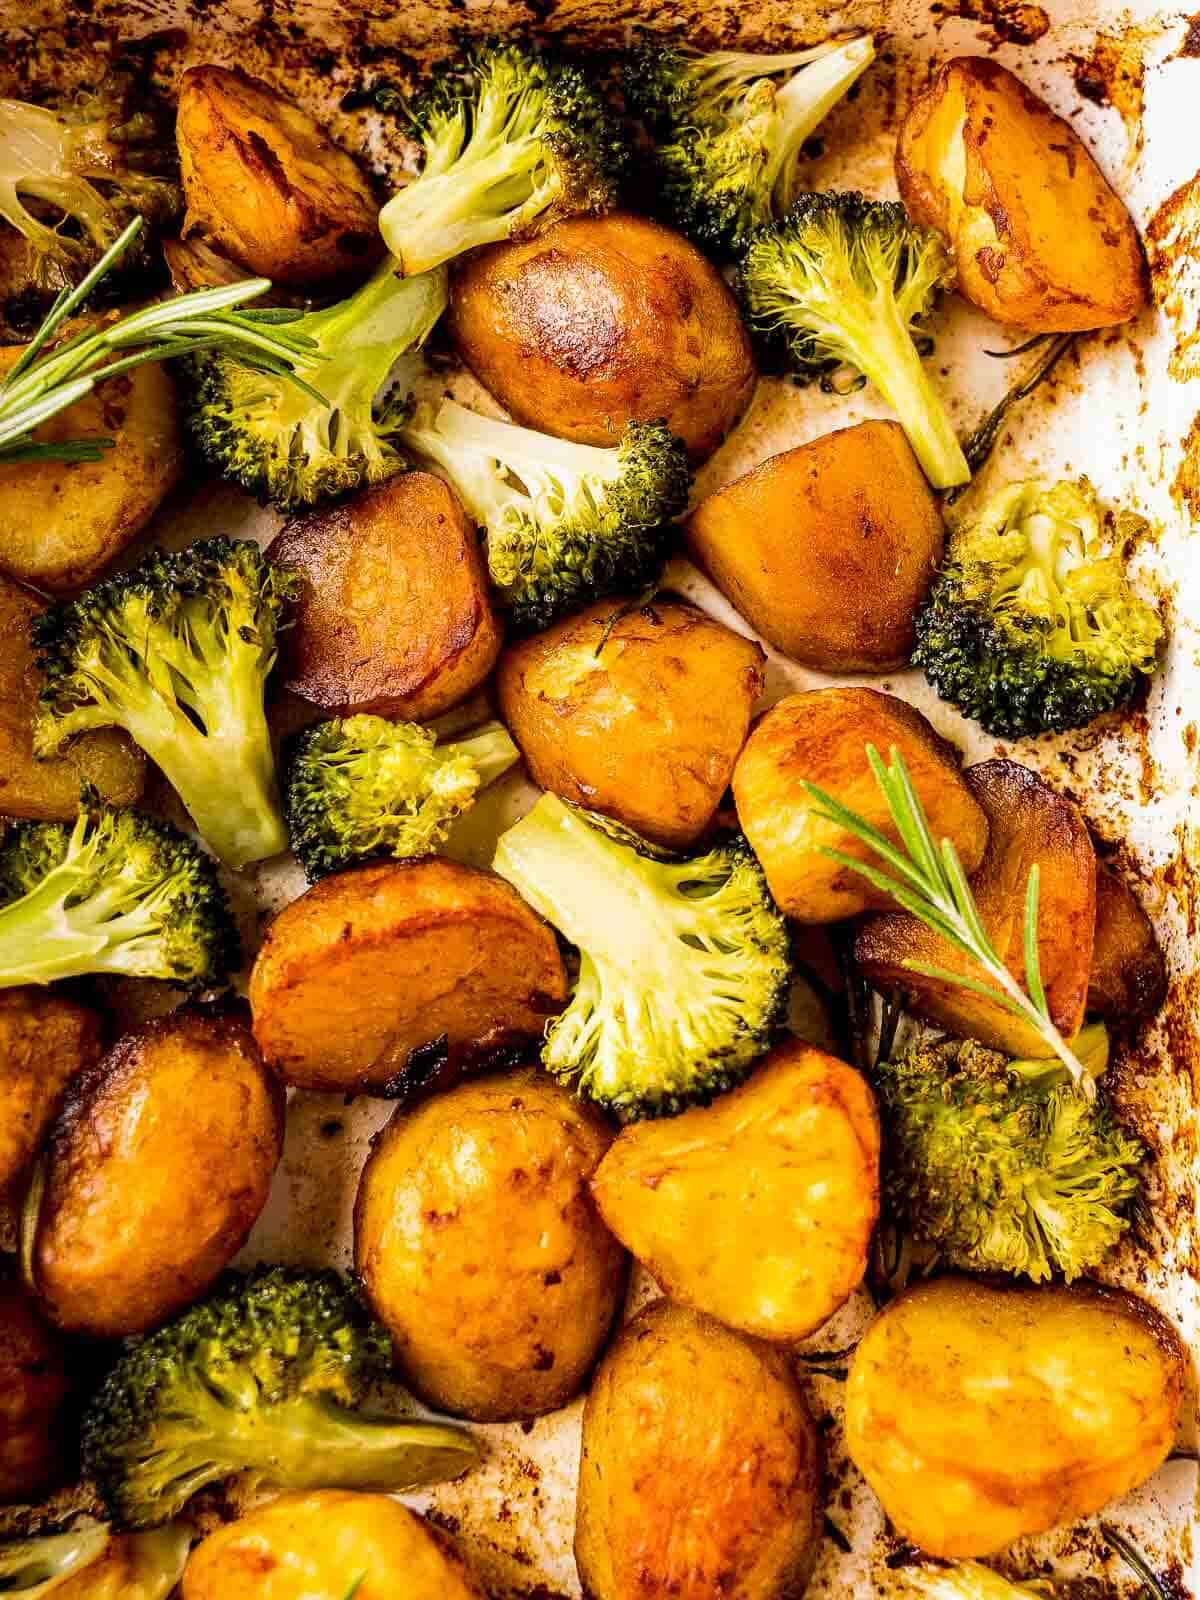 patatas asadas al horno con brócoli.